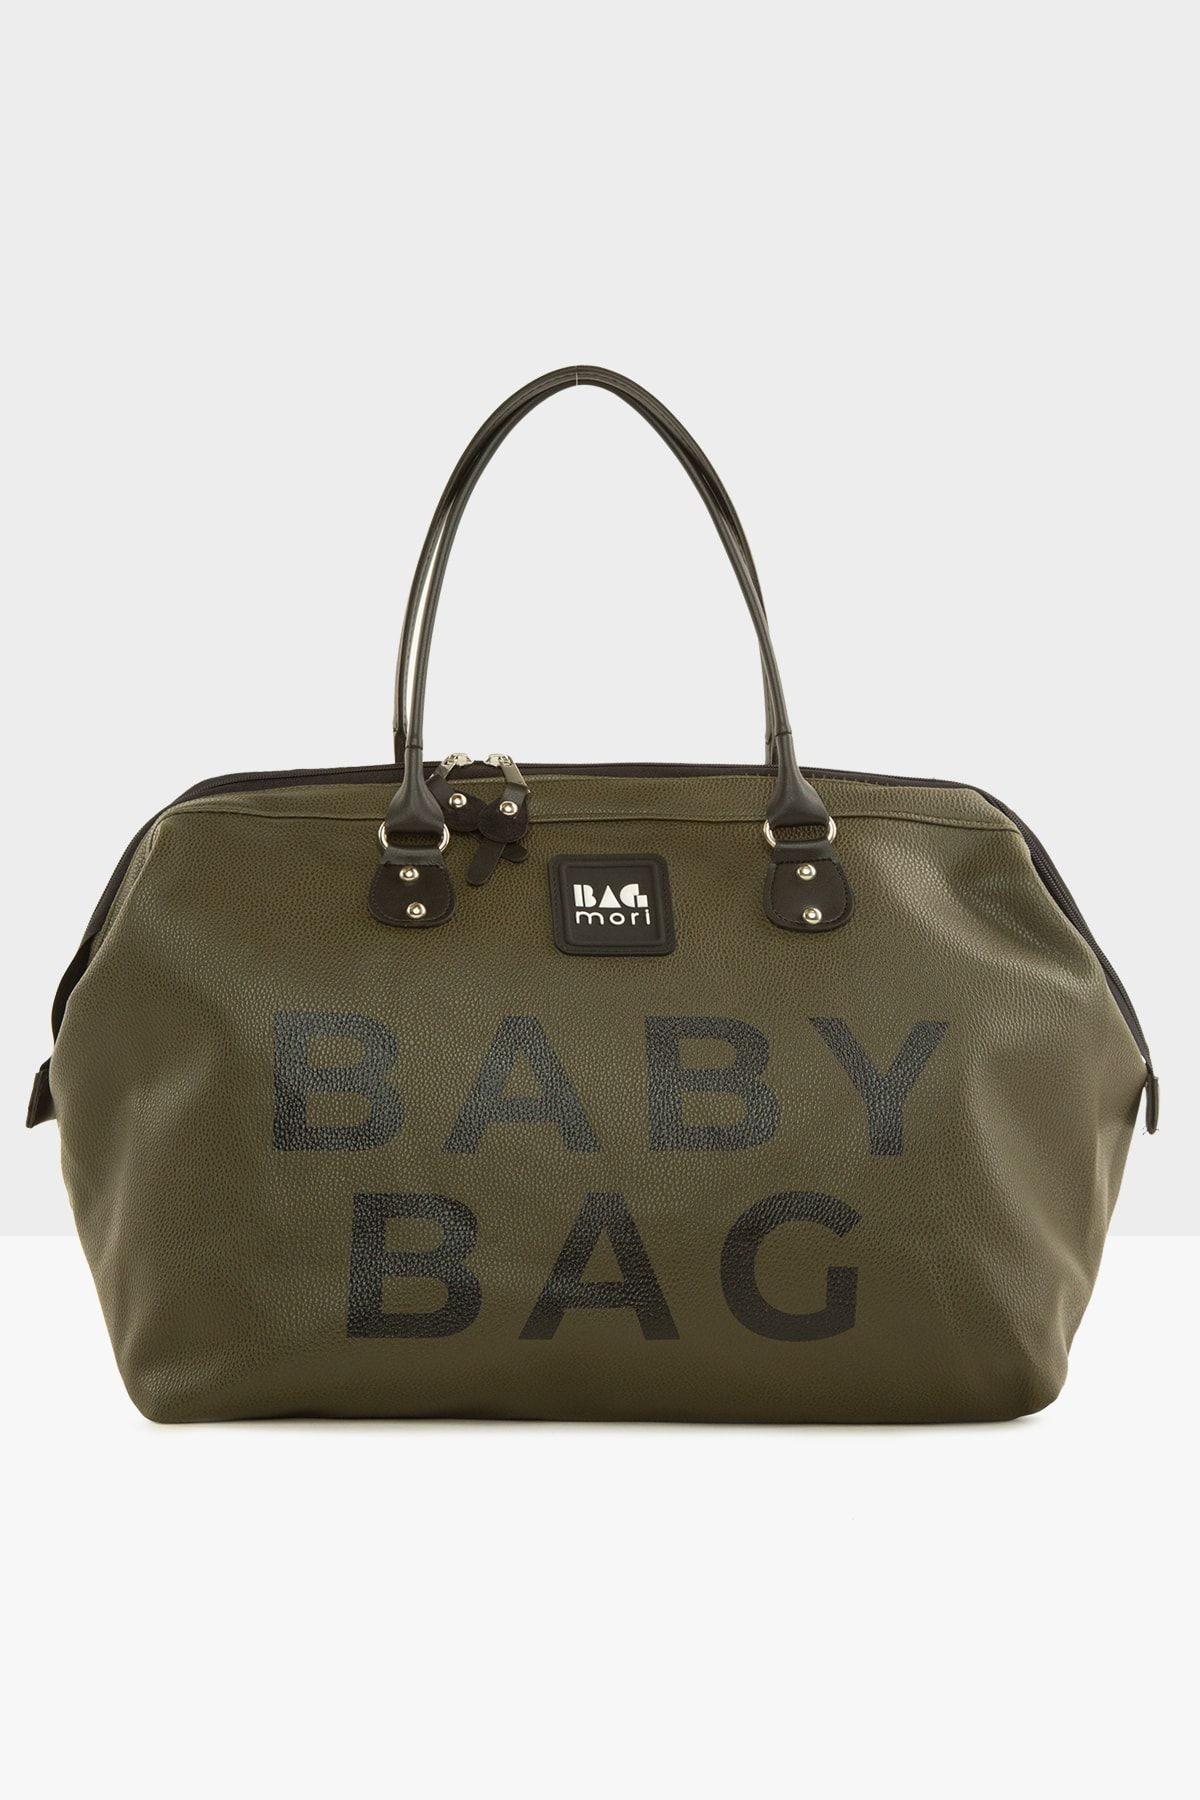 Bagmori Haki Baby Bag Baskılı Deri Anne Bebek Bakım Çantası M000007204